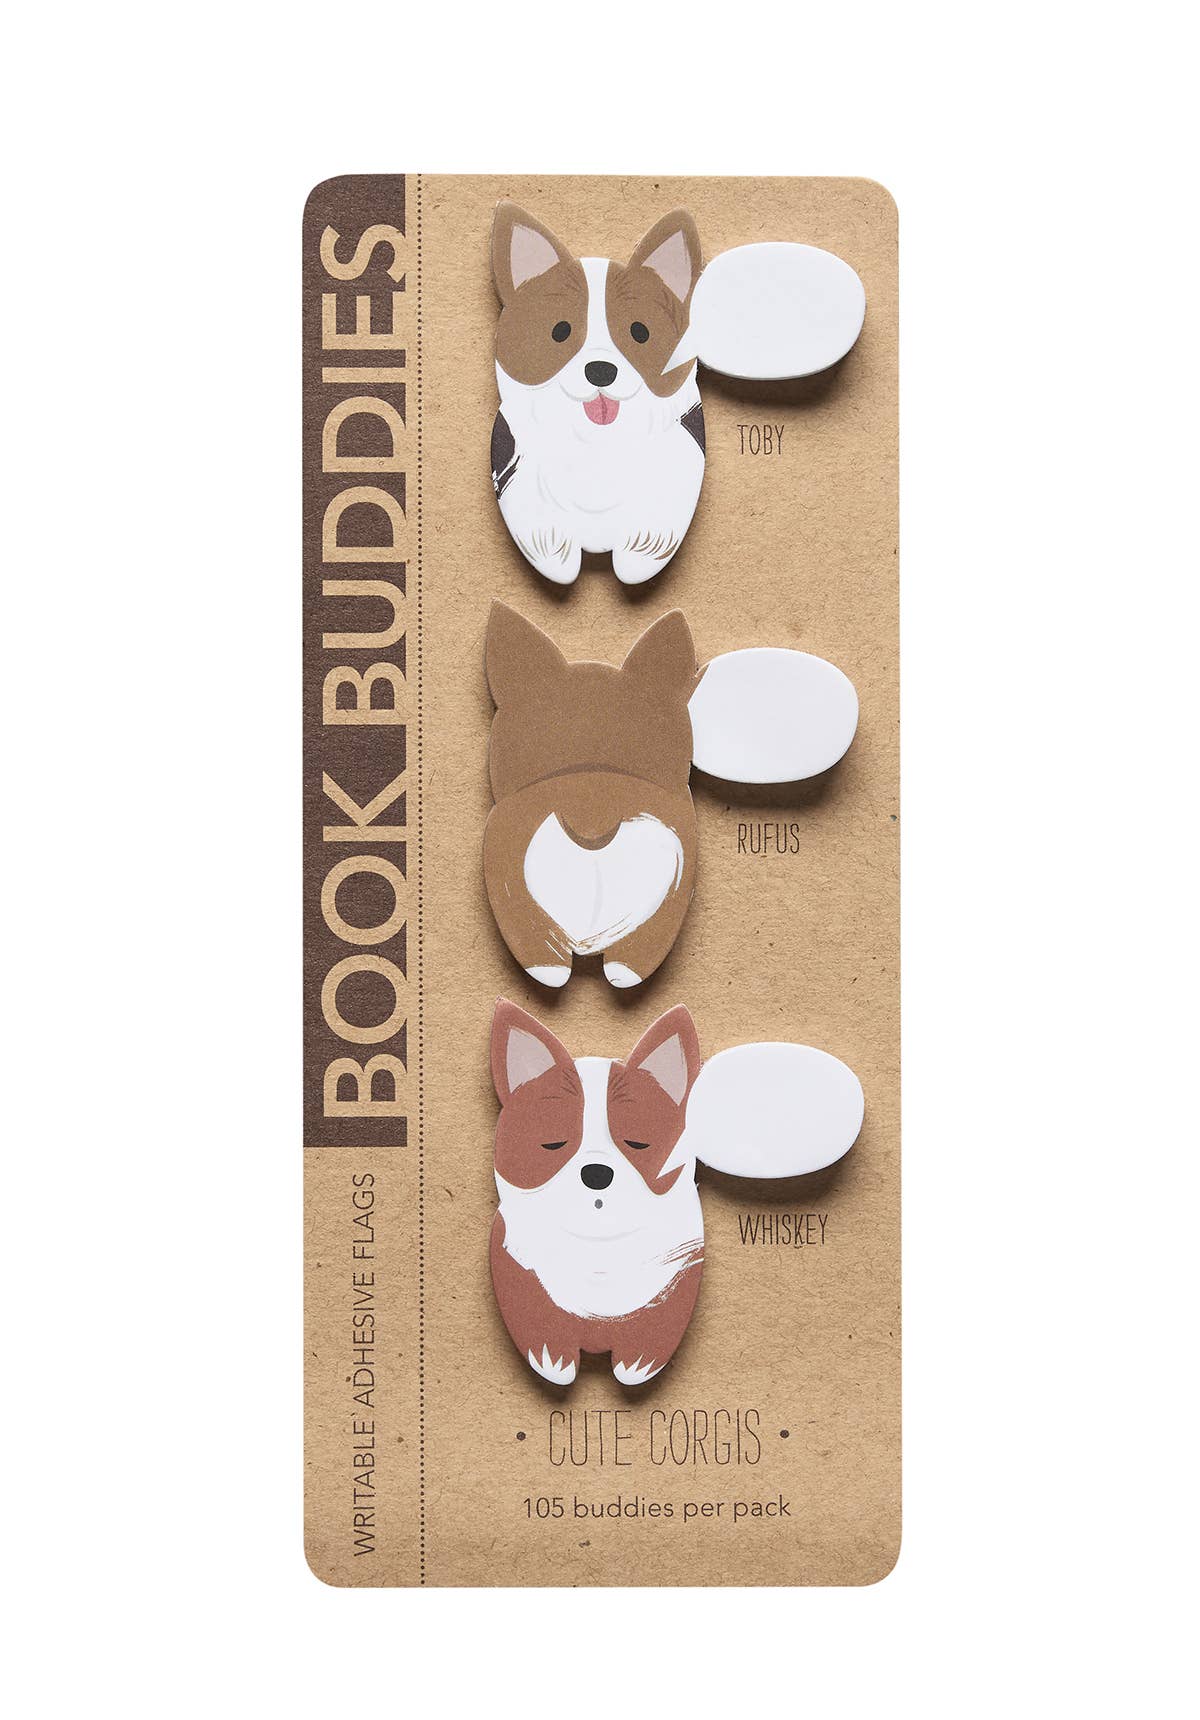 Cute Corgis Book Buddies